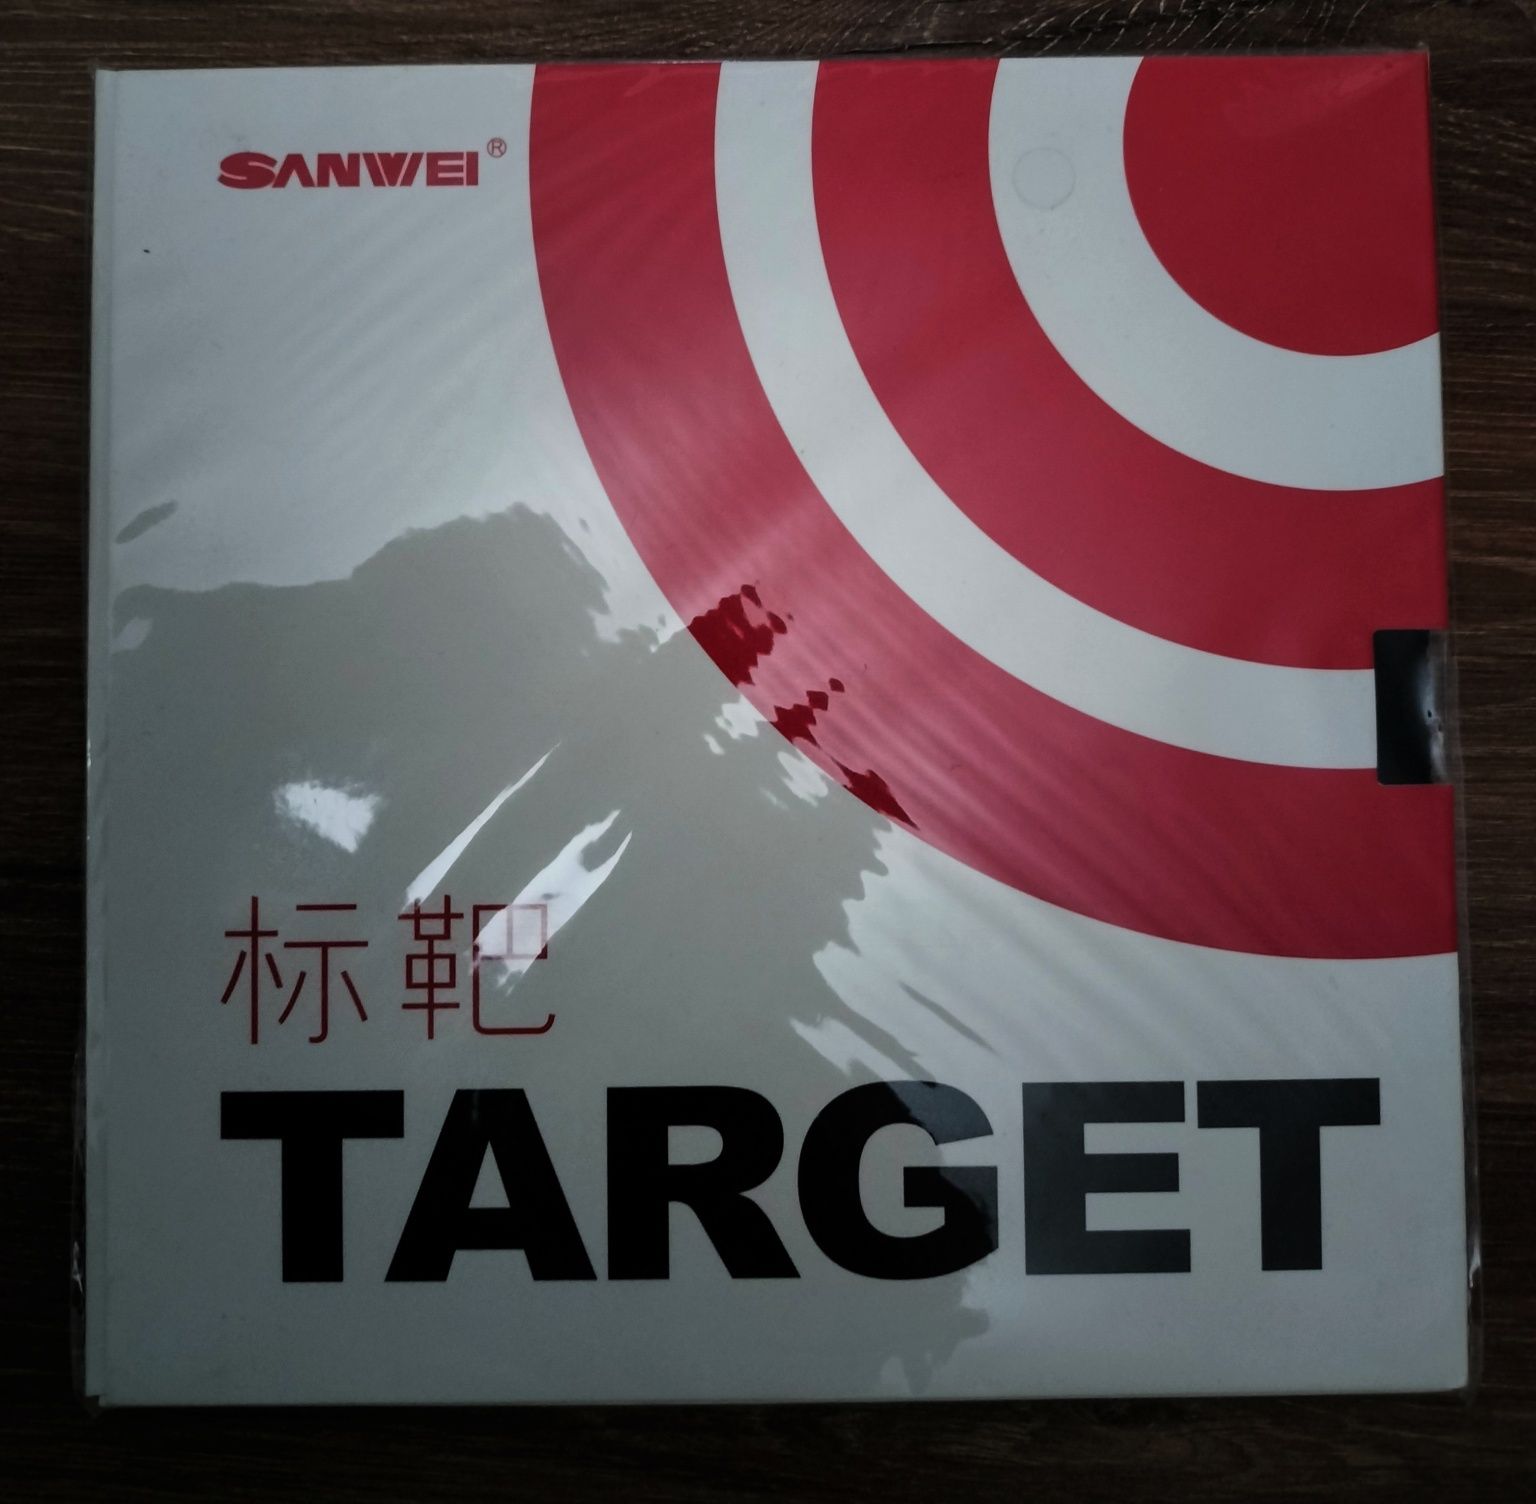 Okładzina Sanwei Target 2,1 H40 czerwona lub czarna tenis stołowy